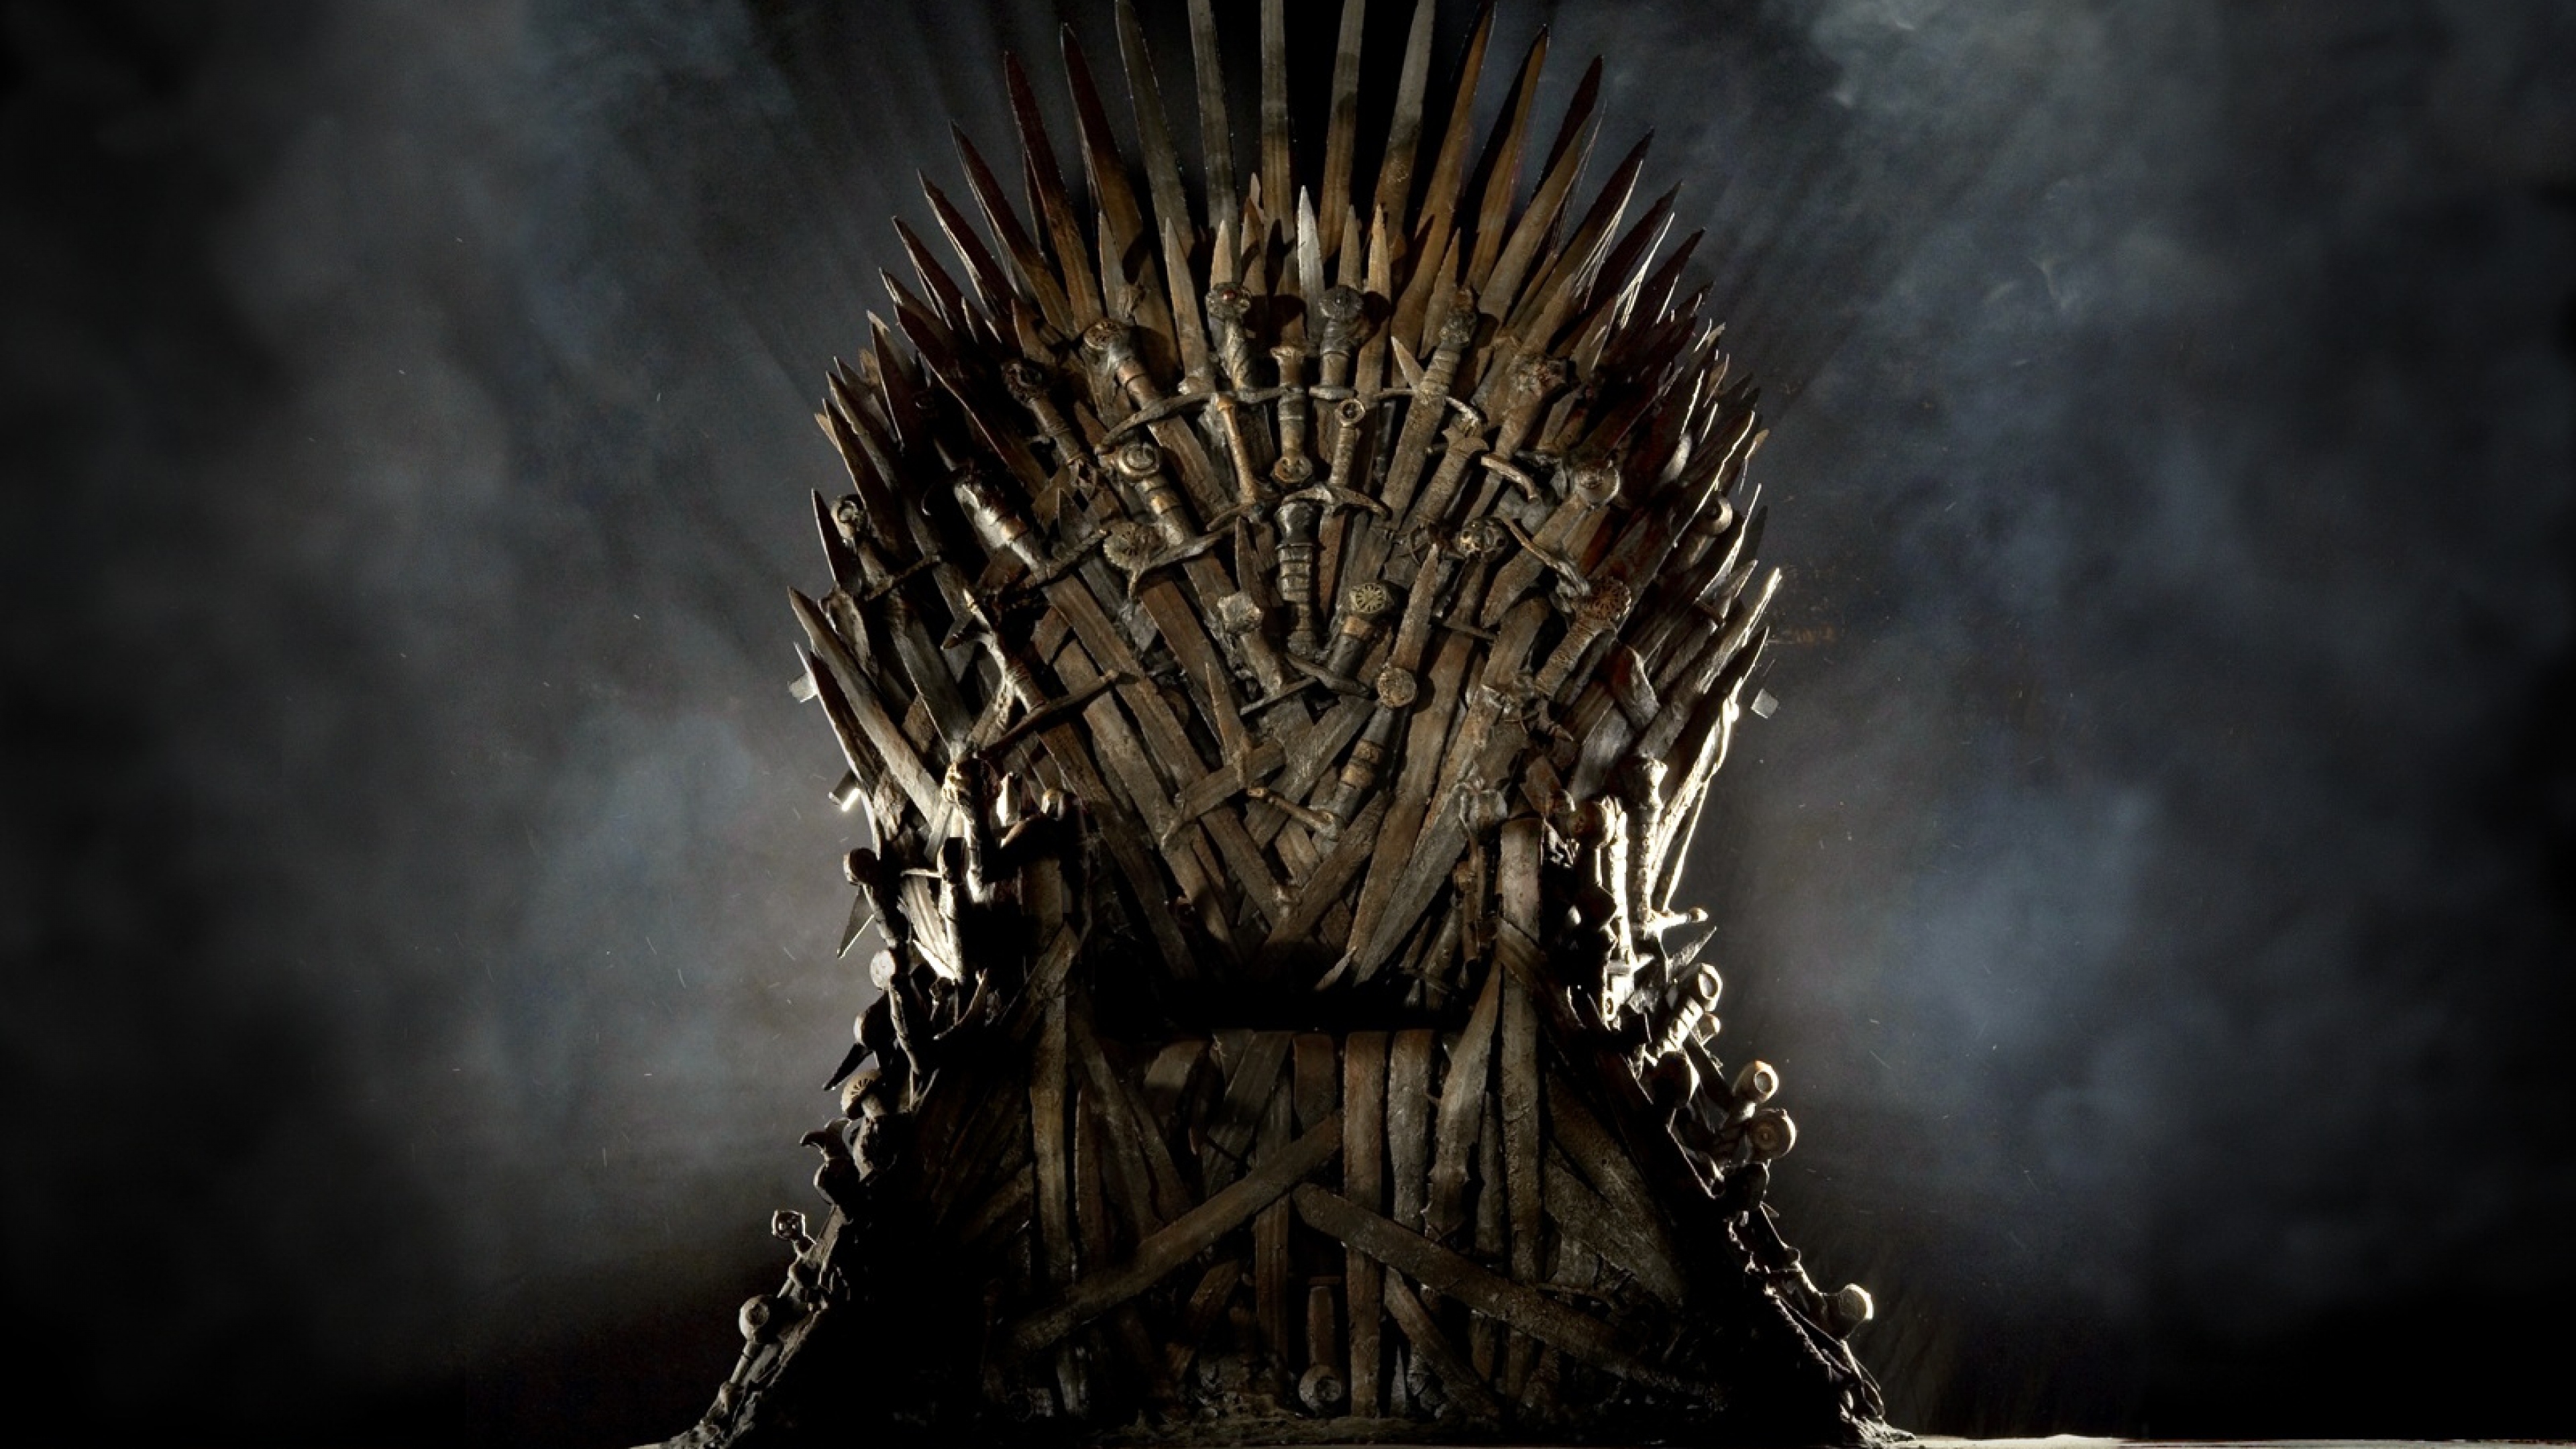 24+] Game Of Thrones Chair Wallpaper - WallpaperSafari